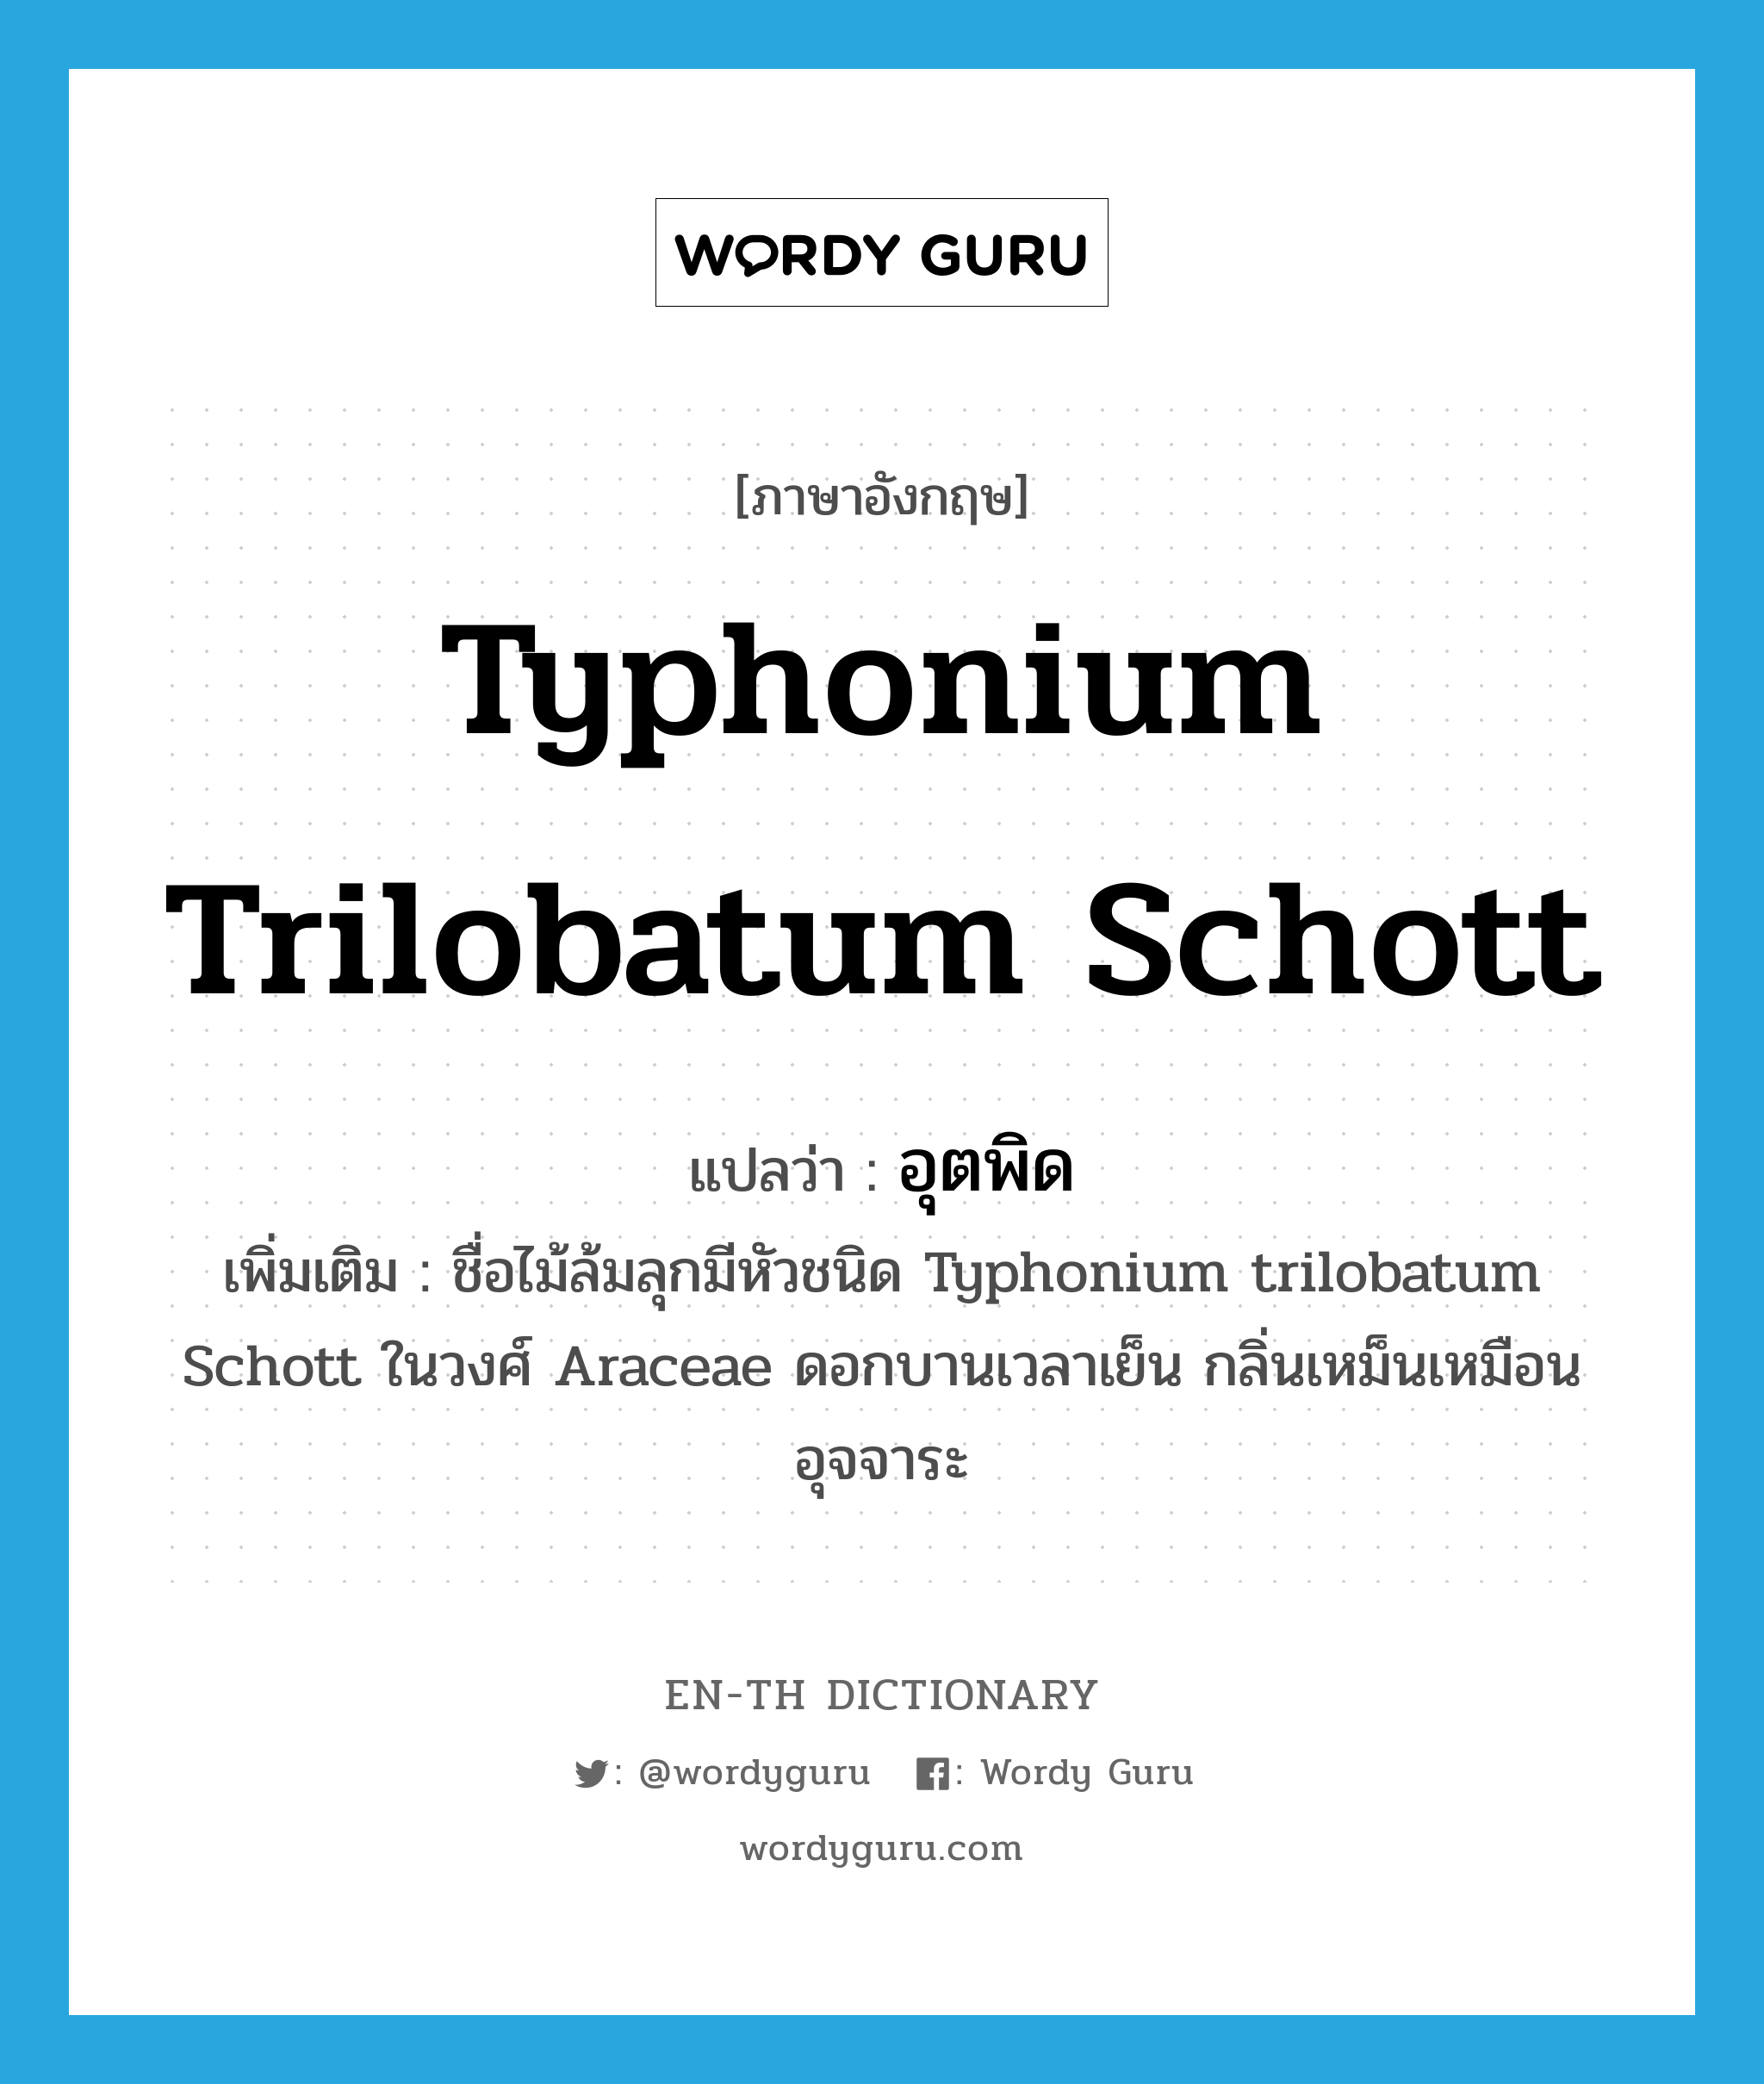 อุตพิด ภาษาอังกฤษ?, คำศัพท์ภาษาอังกฤษ อุตพิด แปลว่า Typhonium trilobatum Schott ประเภท N เพิ่มเติม ชื่อไม้ล้มลุกมีหัวชนิด Typhonium trilobatum Schott ในวงศ์ Araceae ดอกบานเวลาเย็น กลิ่นเหม็นเหมือนอุจจาระ หมวด N